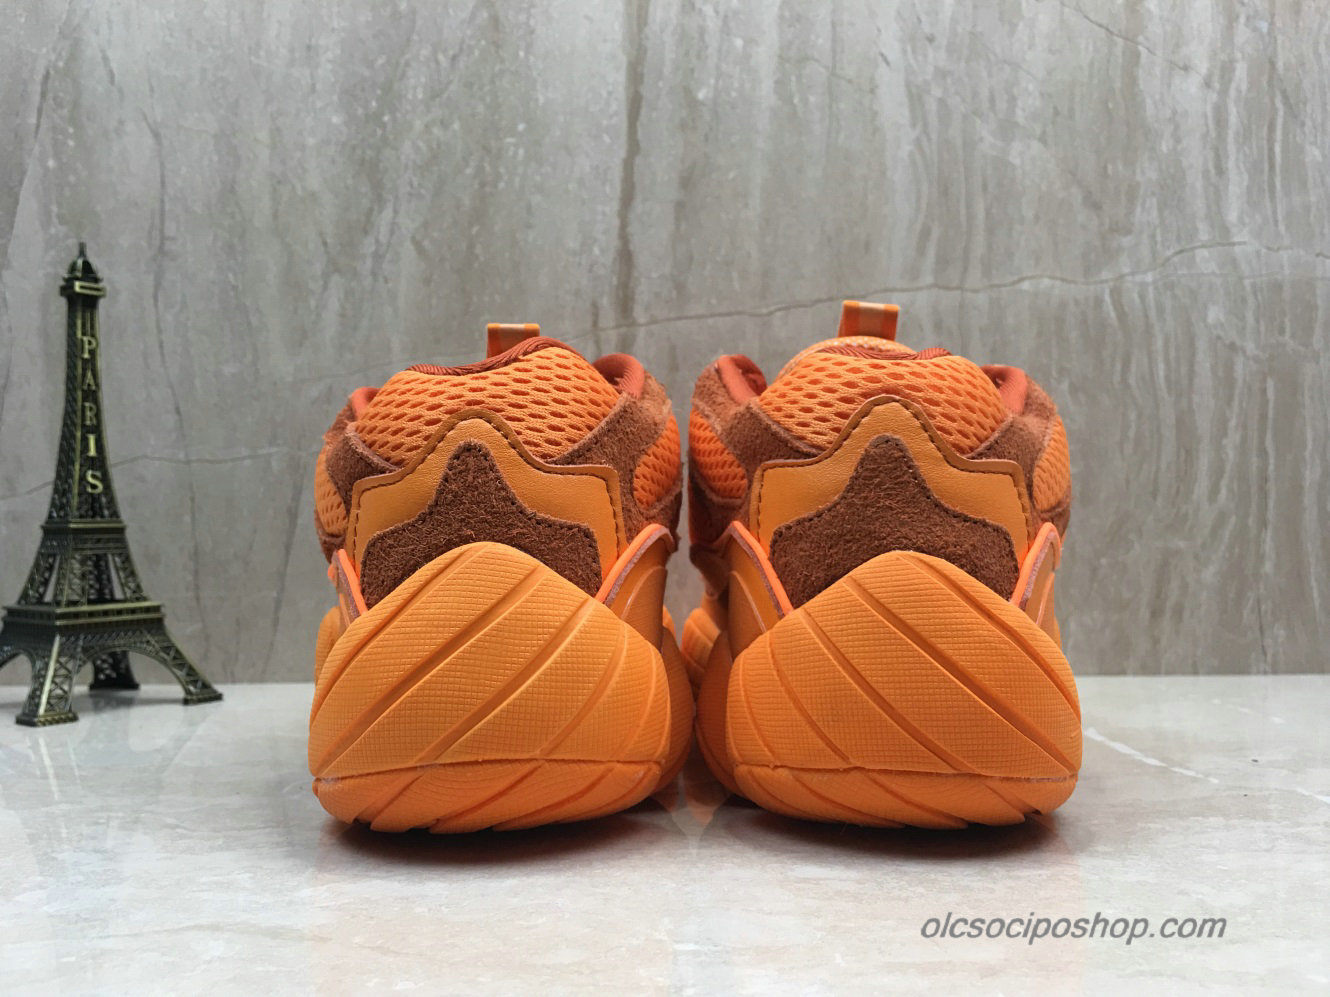 Adidas Yeezy Desert Rat 500 Blush Narancs Cipők (F36648) - Kattintásra bezárul